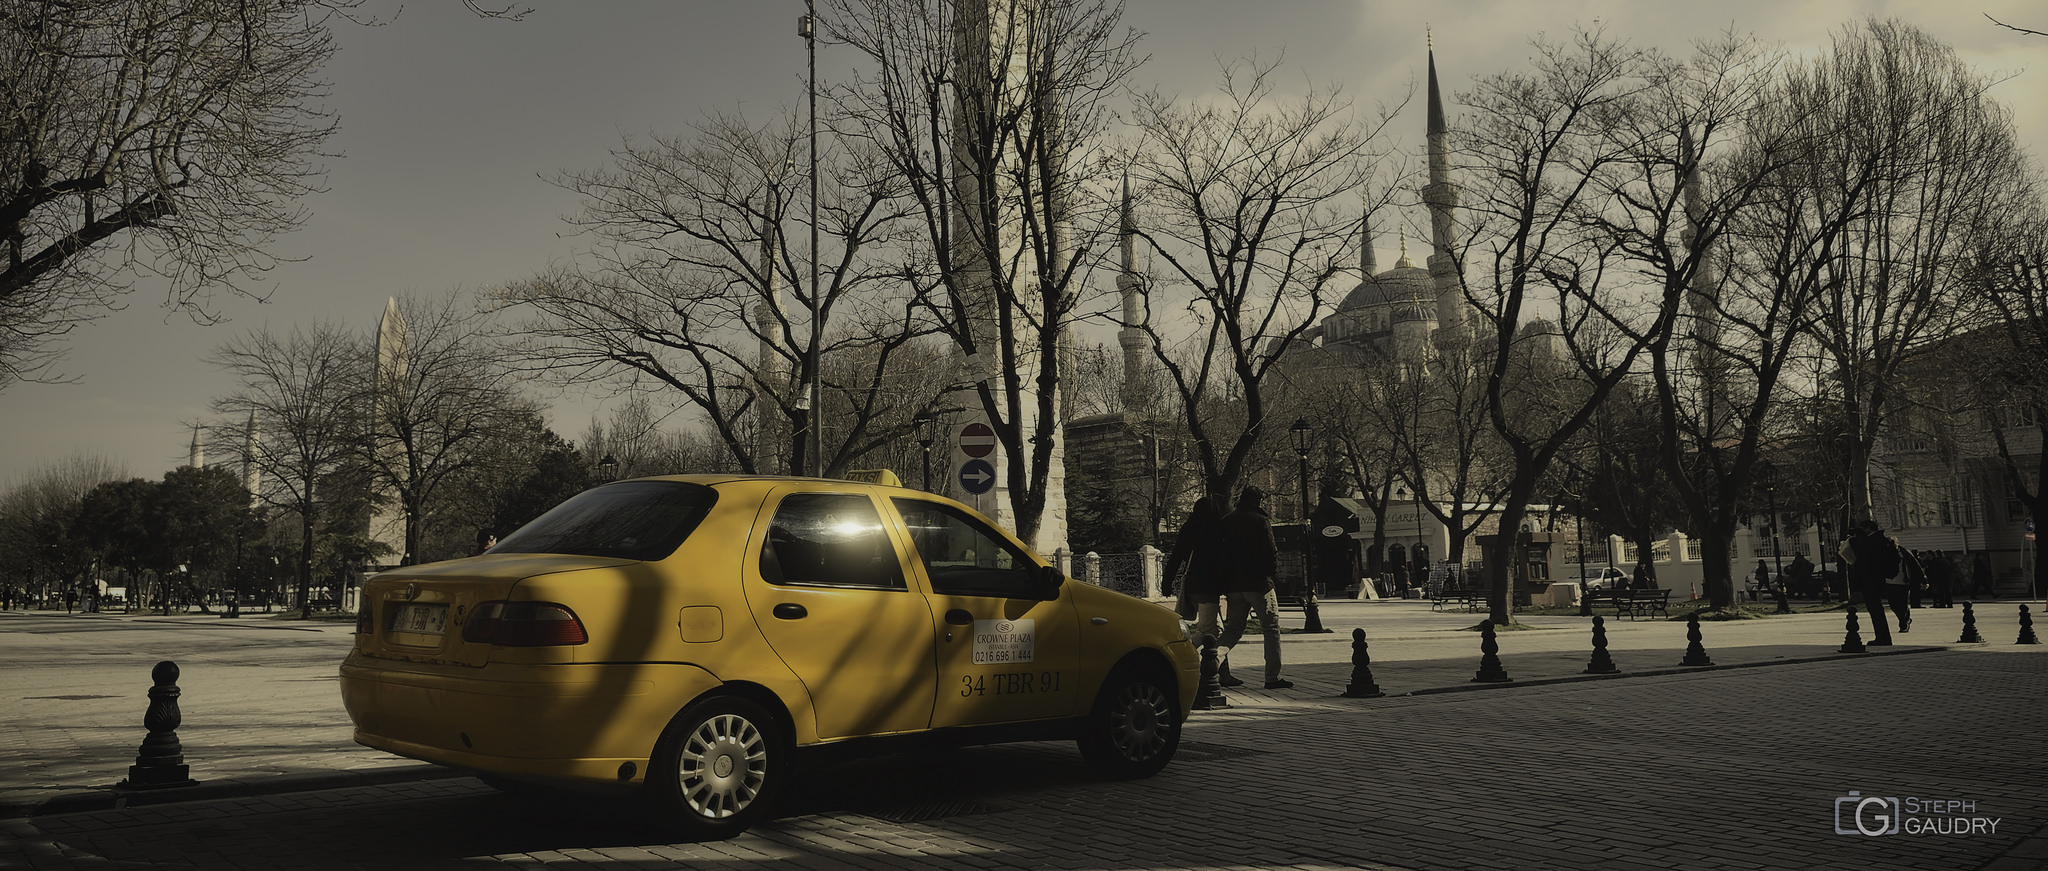 Renkler, sarı taksi ve Sultanahmet Camii [sinemaskop] [Klicken Sie hier, um die Diashow zu starten]